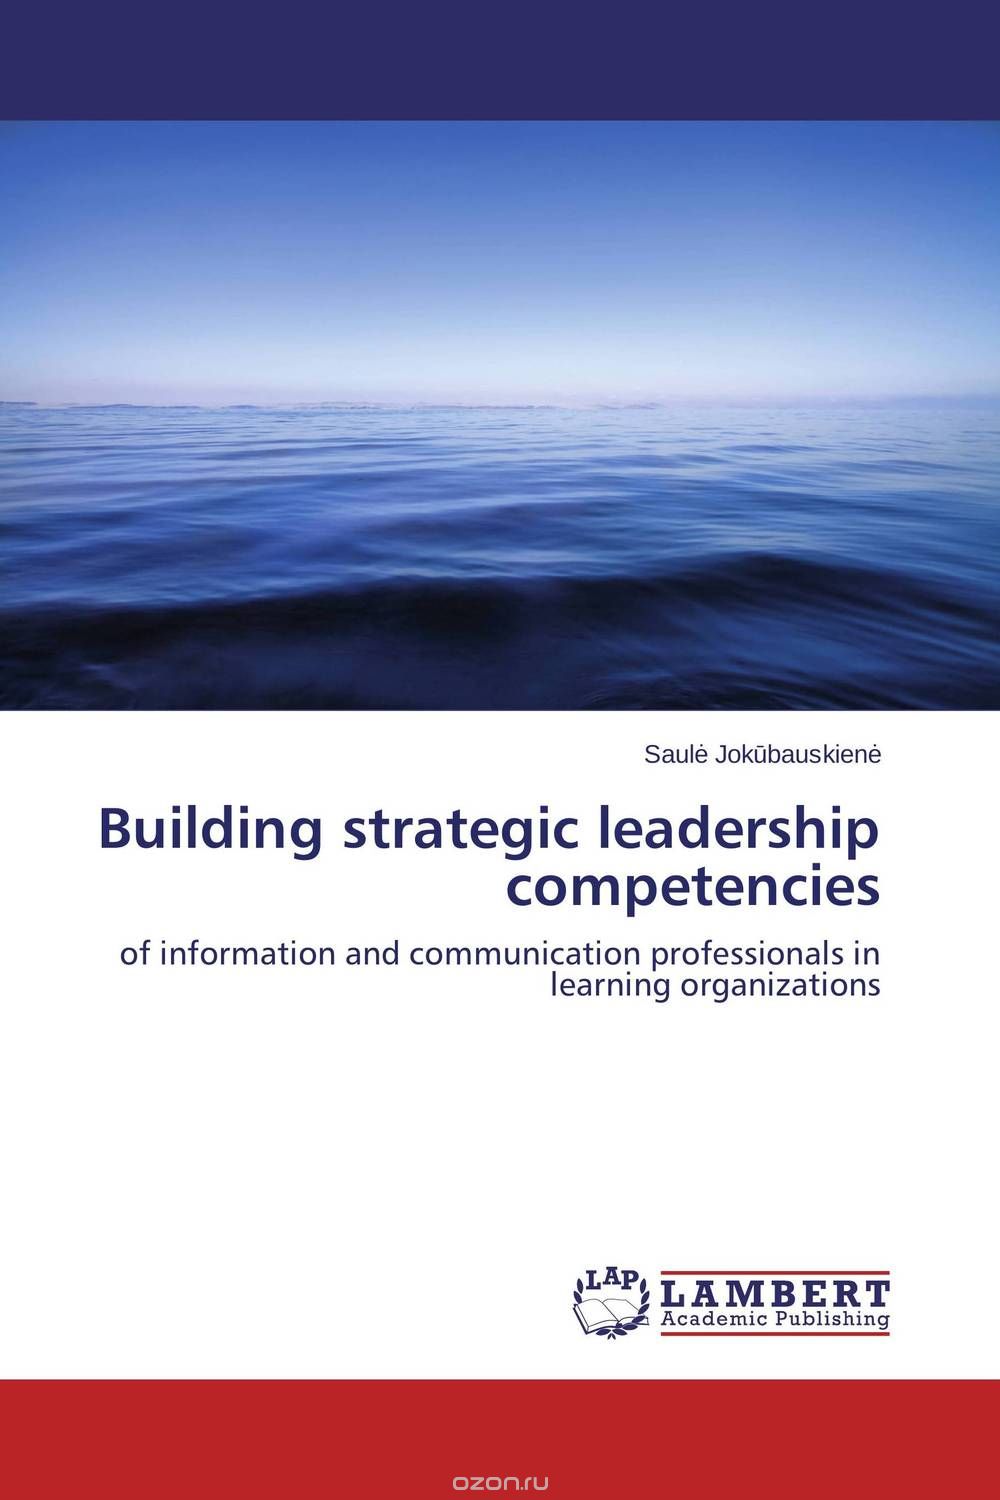 Скачать книгу "Building strategic leadership competencies"